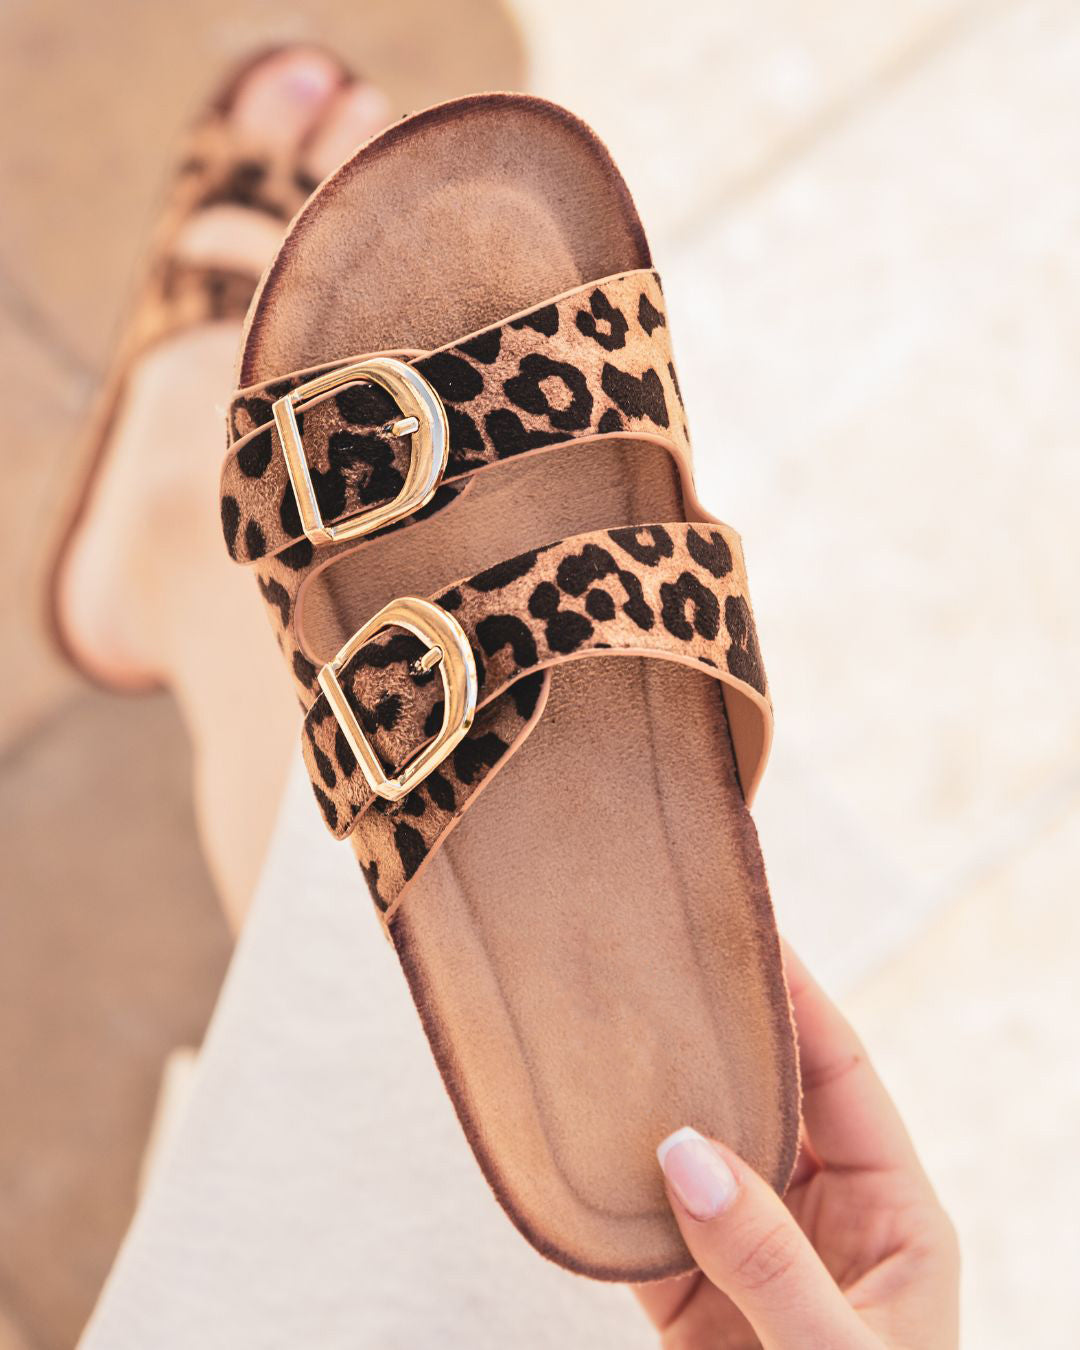 Sandale femme plate confort léopard - Noémie - Casualmode.fr